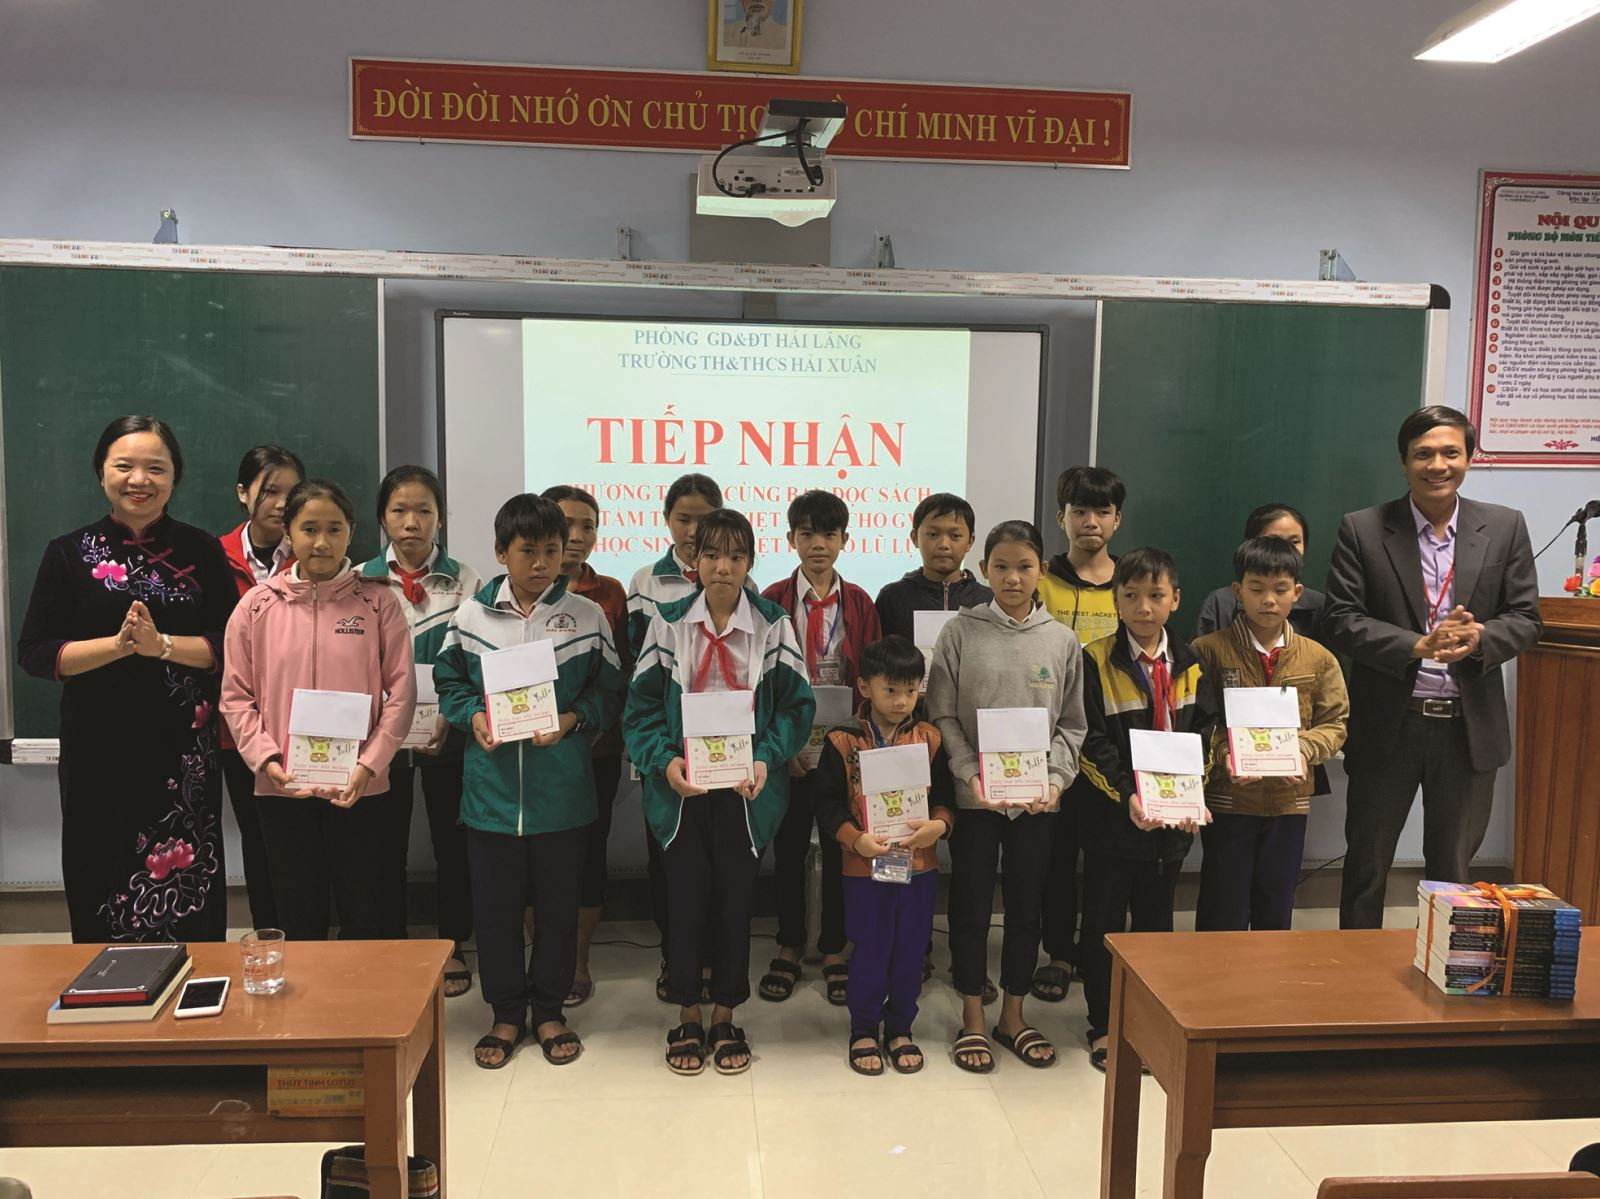 Vụ Thư viện: Trao tặng sách, thiết bị thư viện cho giáo viên và học sinh ở Quảng Trị